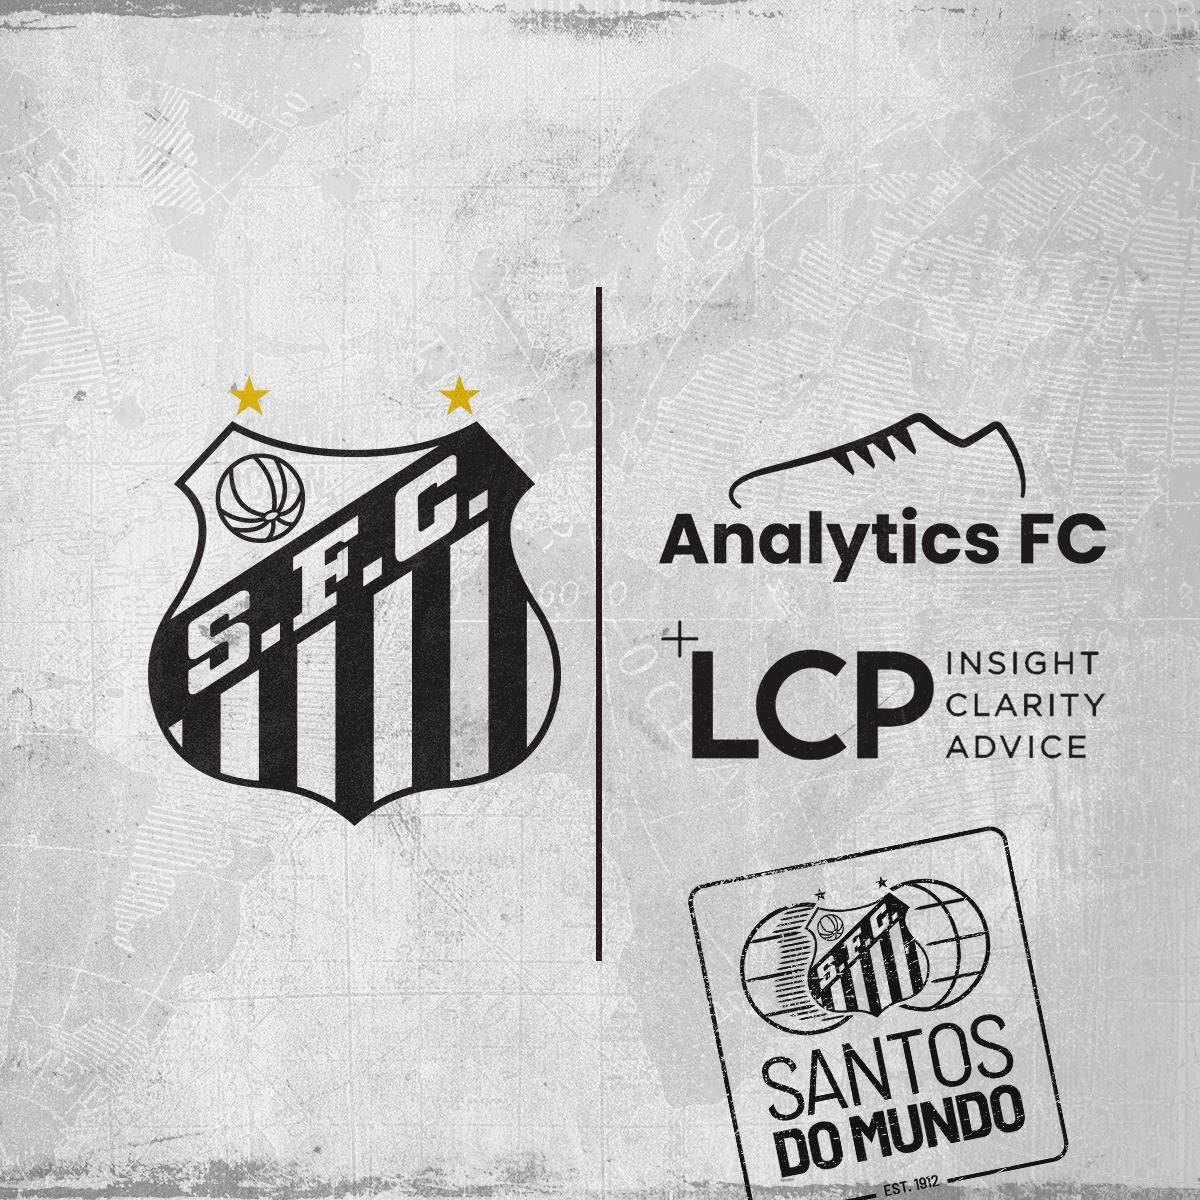 O Santos FC fechou uma parceria para a Análise de Dados com a líder global em consultoria de futebol Analytics FC, para acessar a TransferLab, uma plataforma personalizada para o scouting no futebol.

Saiba mais! ⬇️
santosfc.com.br/santos-fc-fech…